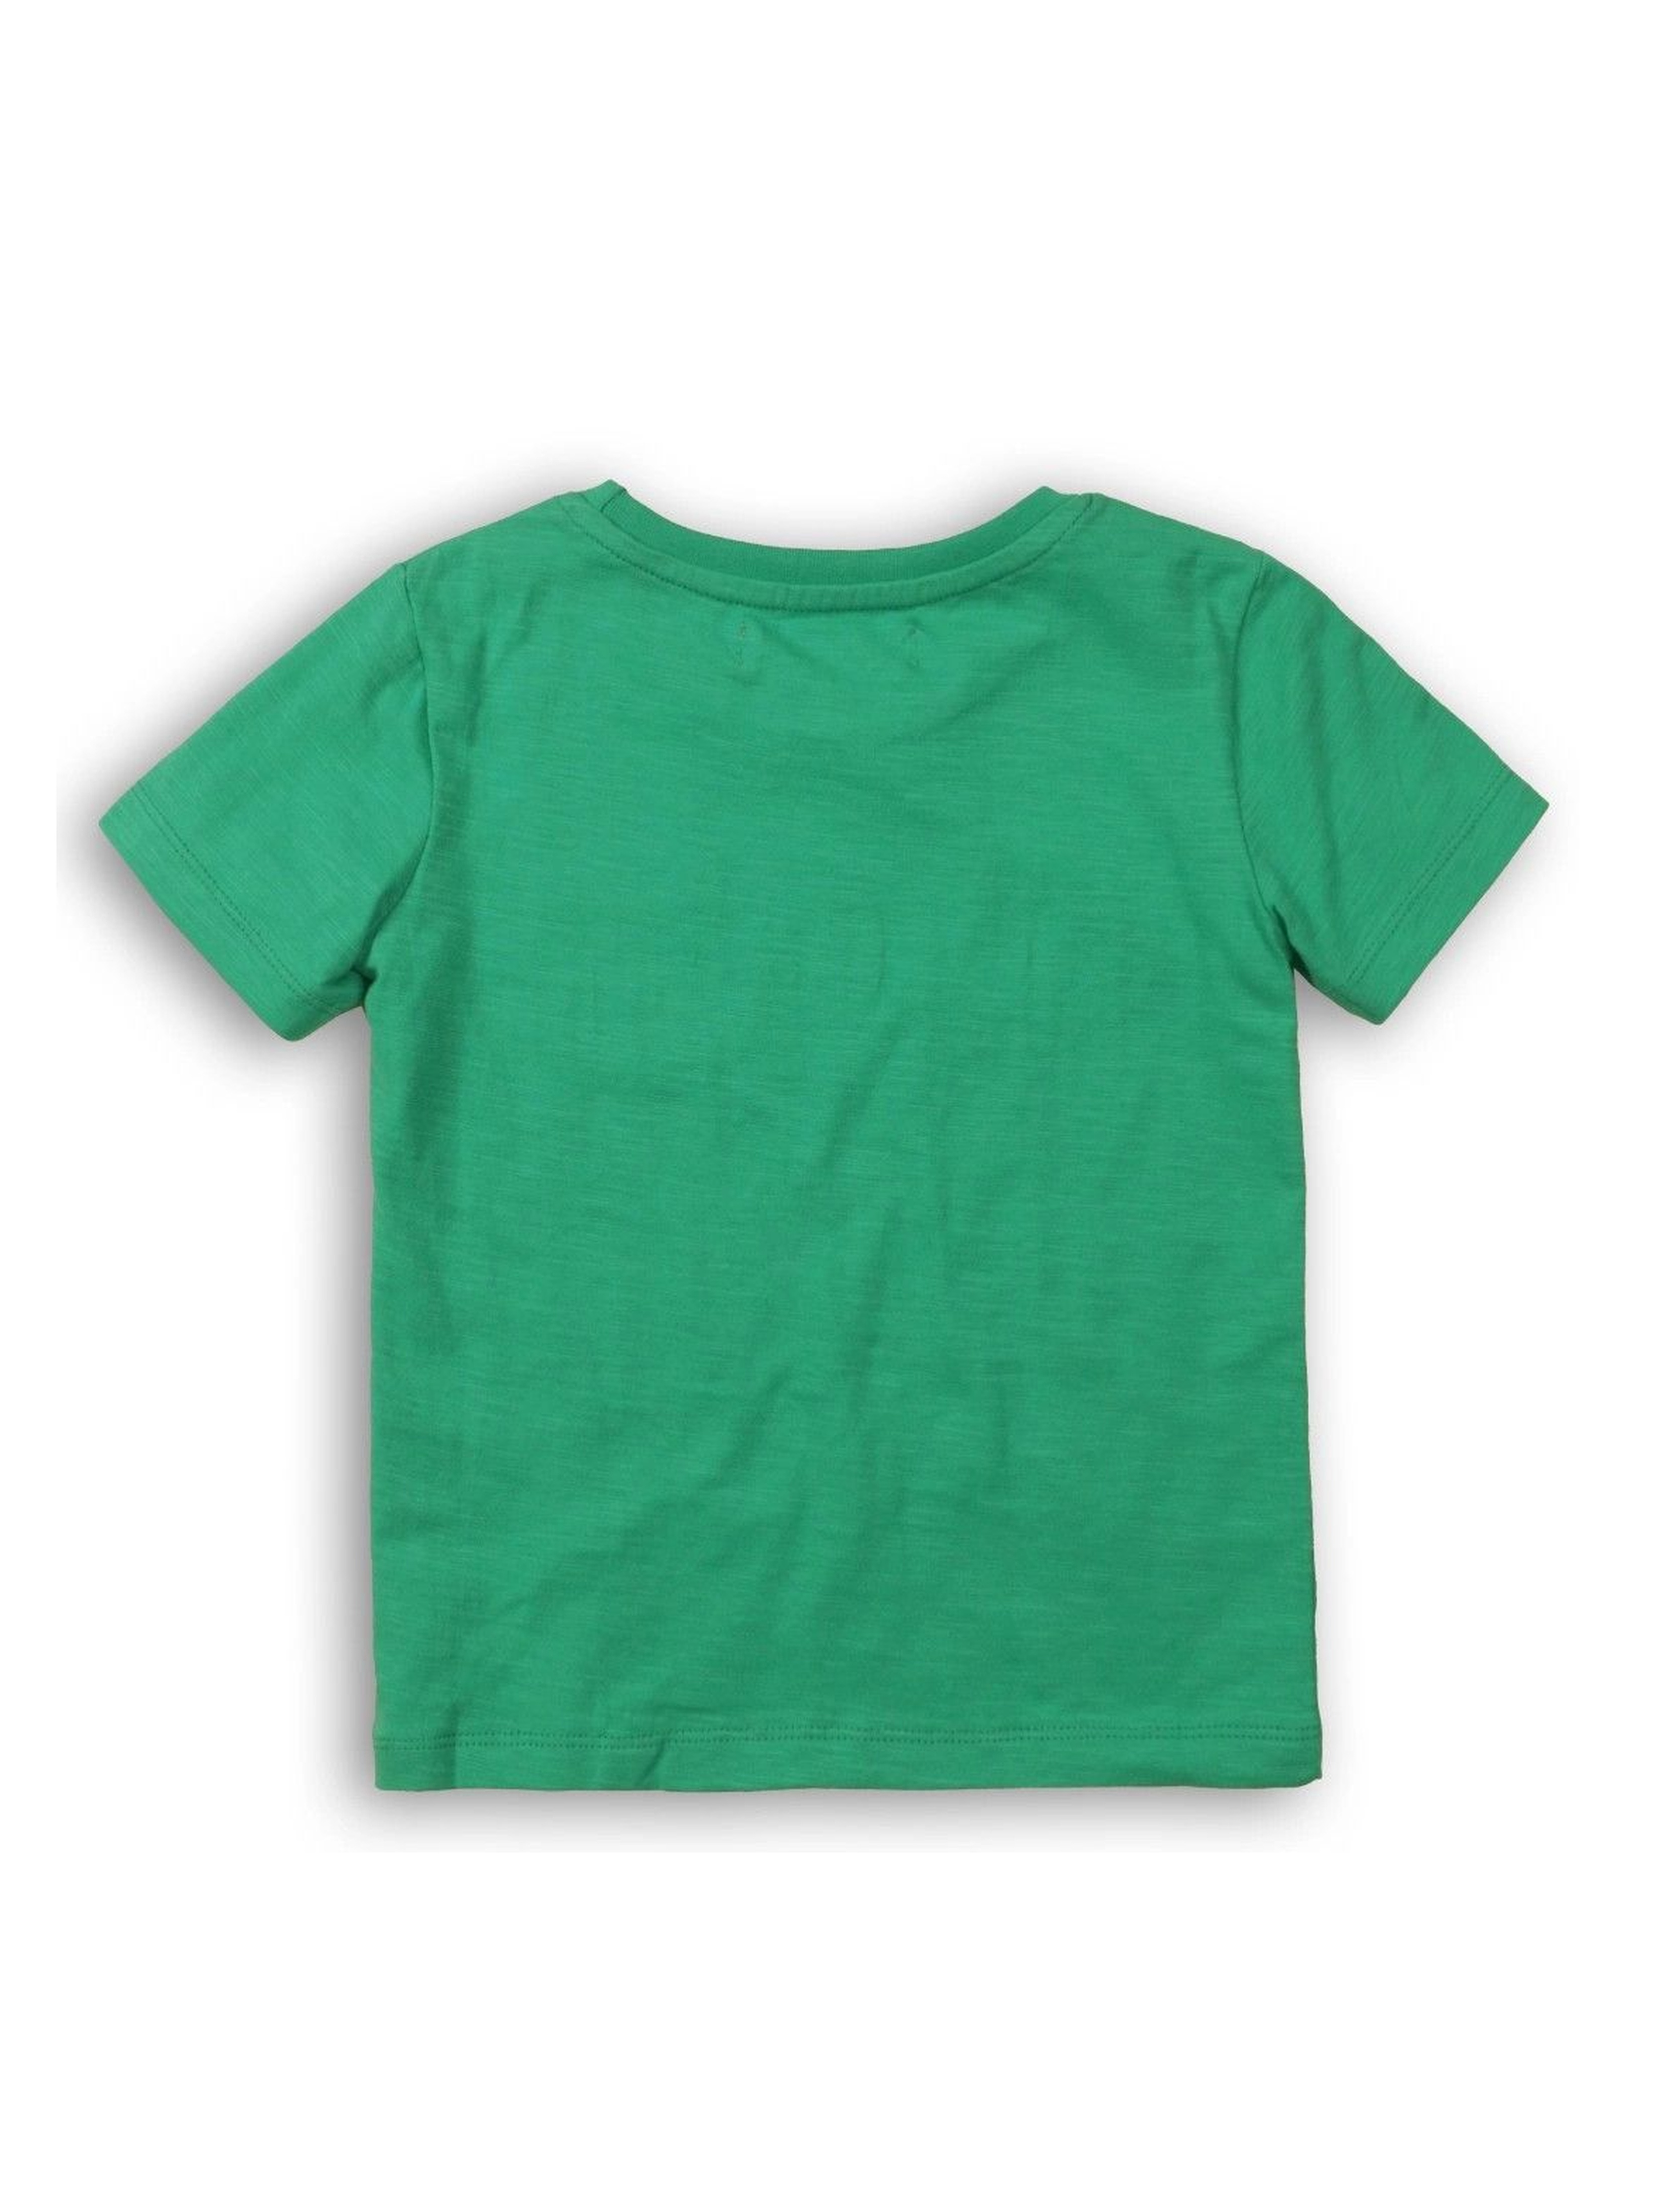 Zielony t-shirt dla niemowlaka